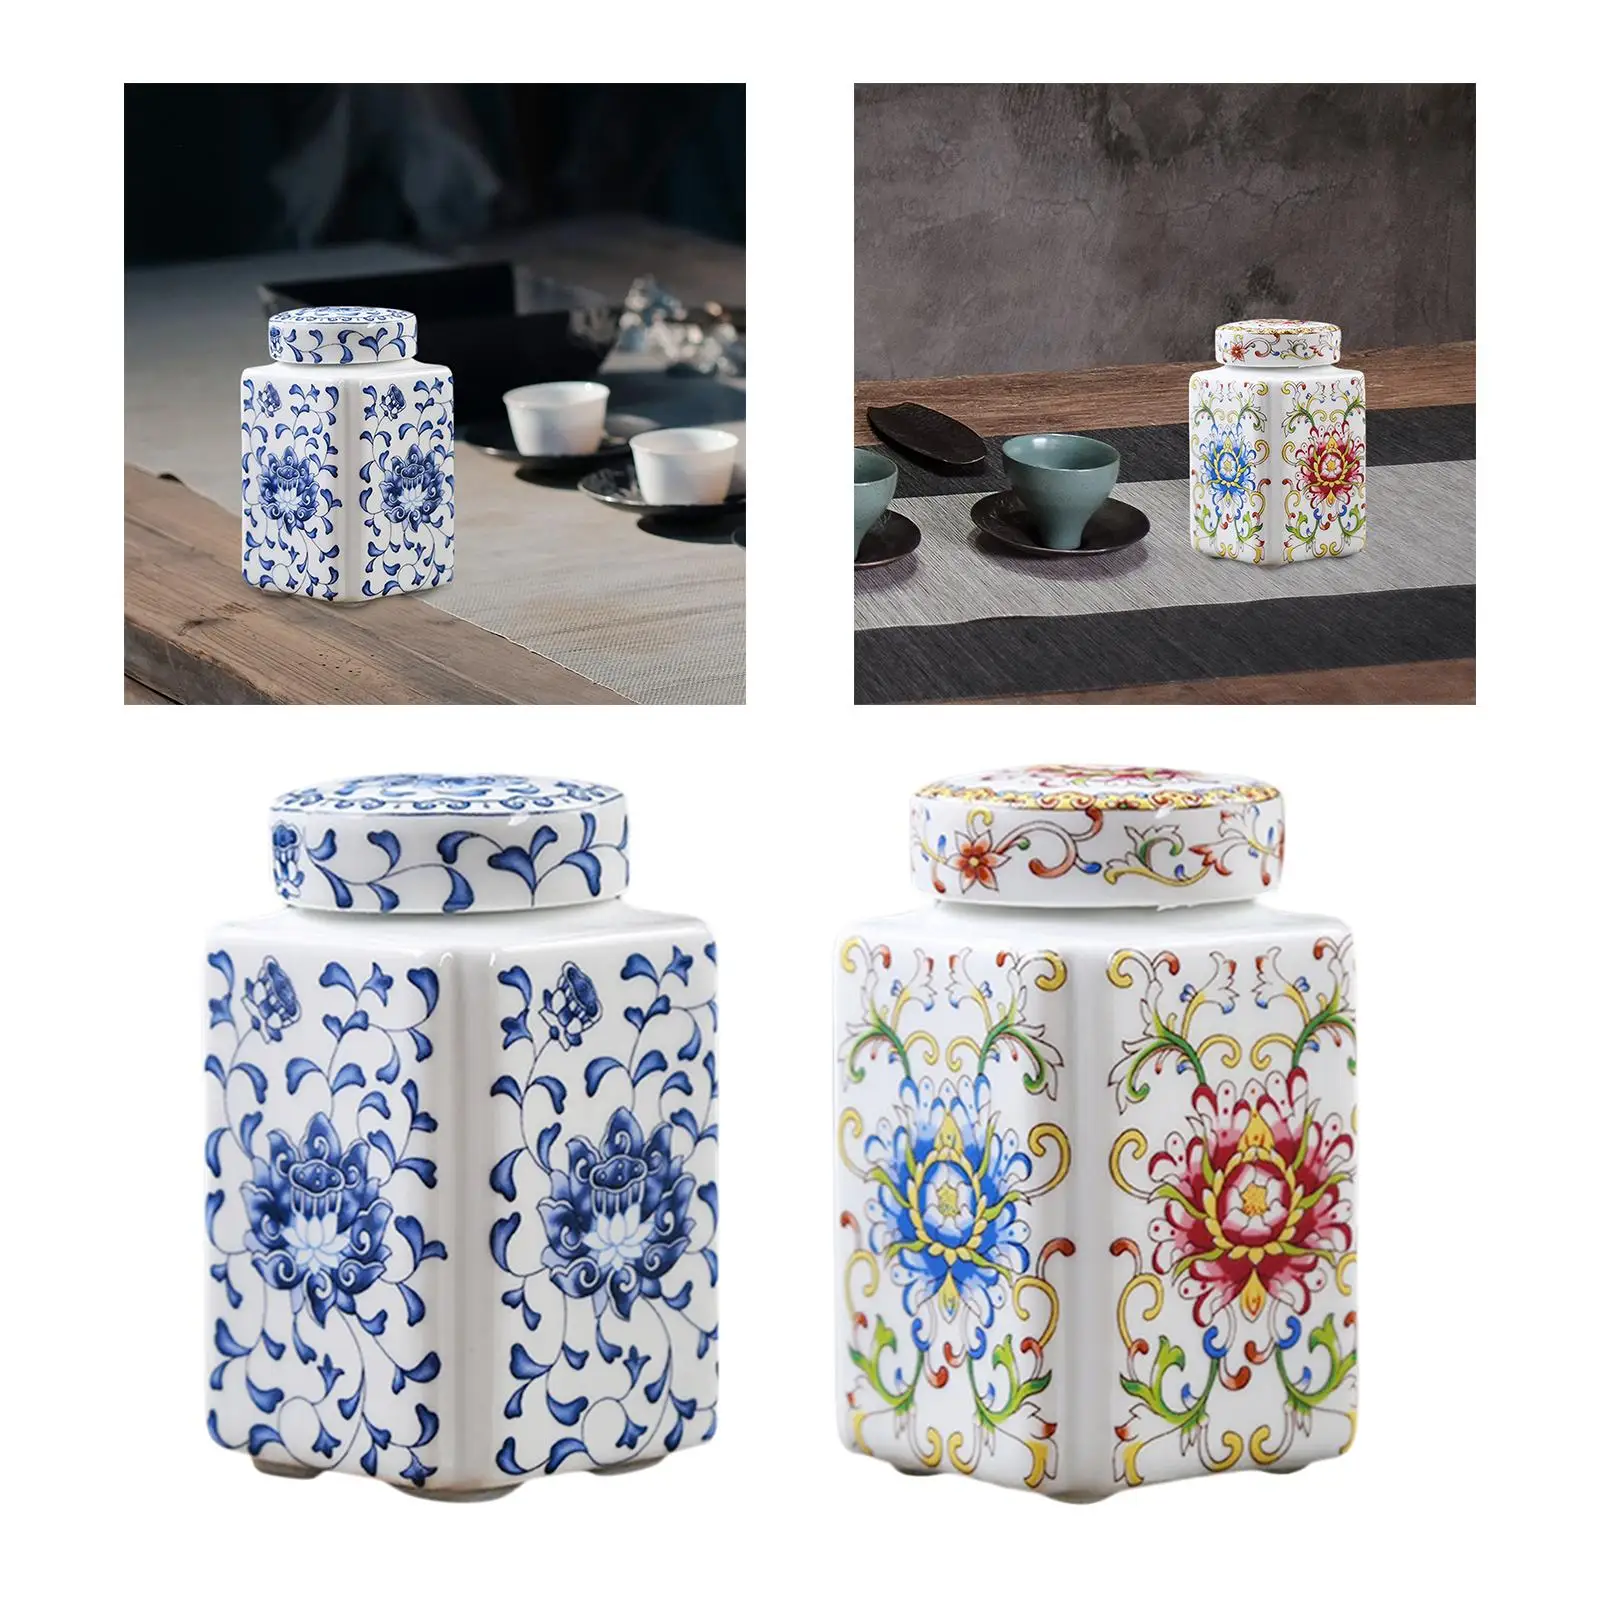 Porcelain Temple Jar Flower Vase Flower Display Organizer Versatile Ceramic Ginger Jar for Home Wedding Table Bedroom Decoration